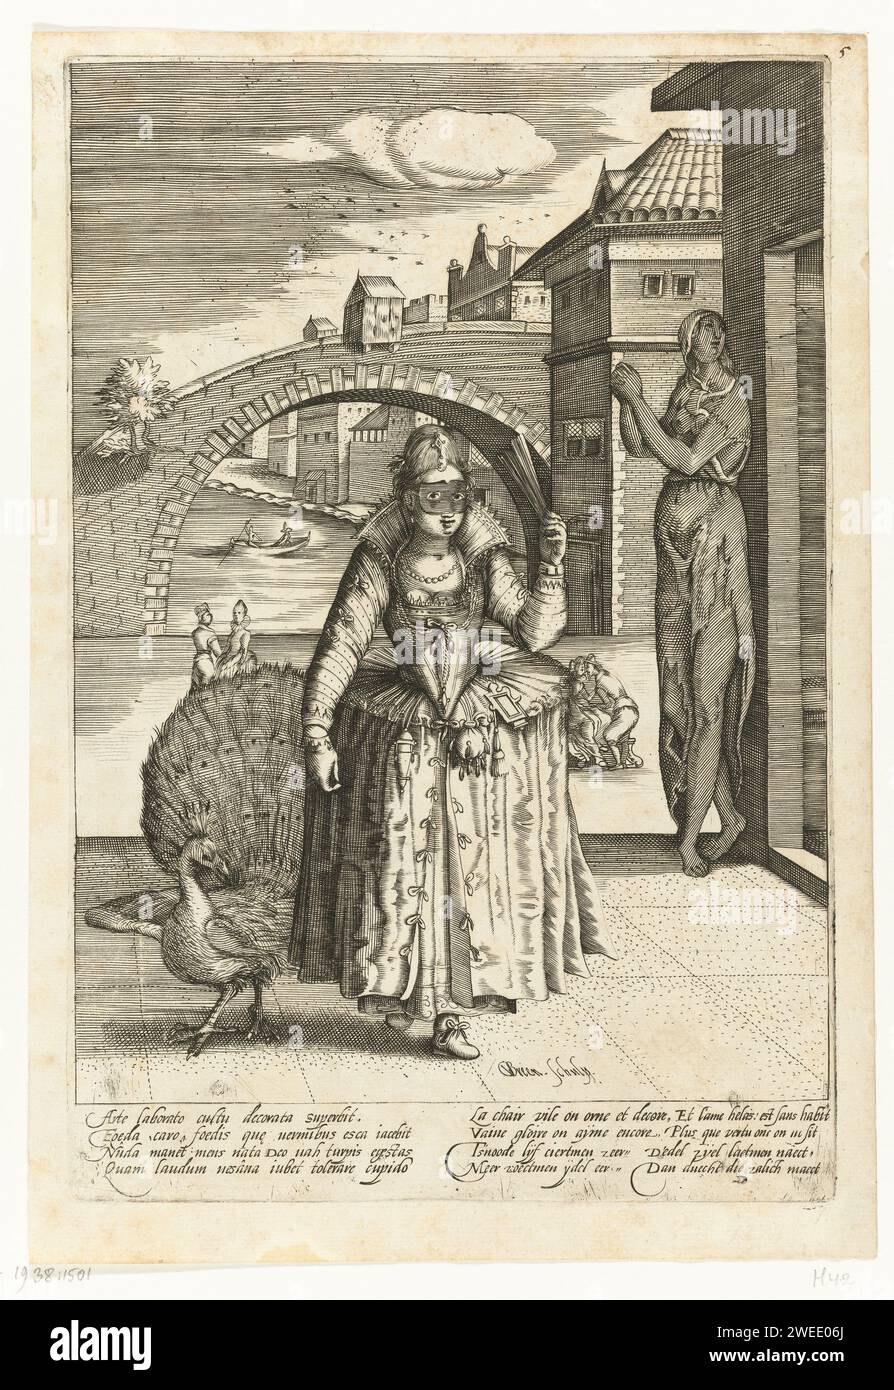 Elegante Dame mit Pfau, Gillis van Breen, nach Anonym, ca. 1595 - ca. 1610 drucken eine elegant gekleidete Dame mit einem Fächer in der Hand und einer Maske auf dem Kopf schlendert auf einem Quadrat. Ein Pfau, das Symbol der Eitelkeit, neben ihm. An einer Straßenecke steht eine arme gekleidete Frau, die Personifikation der Menschen, die vom Mann vernachlässigt werden. Druck aus einer Serie von vier Drucken über die Pflege des Menschen für den Körper und das Ignorieren der Seele. Jeder Druck mit einer Unterschrift in lateinischer, französischer und niederländischer Sprache. (Die weibliche Figur ist eine Kopie des Abdrucks „Gallica in Vestitv Varietas“ aus der Serie der Kostümdrucke von Pieter de Jode bis Seb Stockfoto